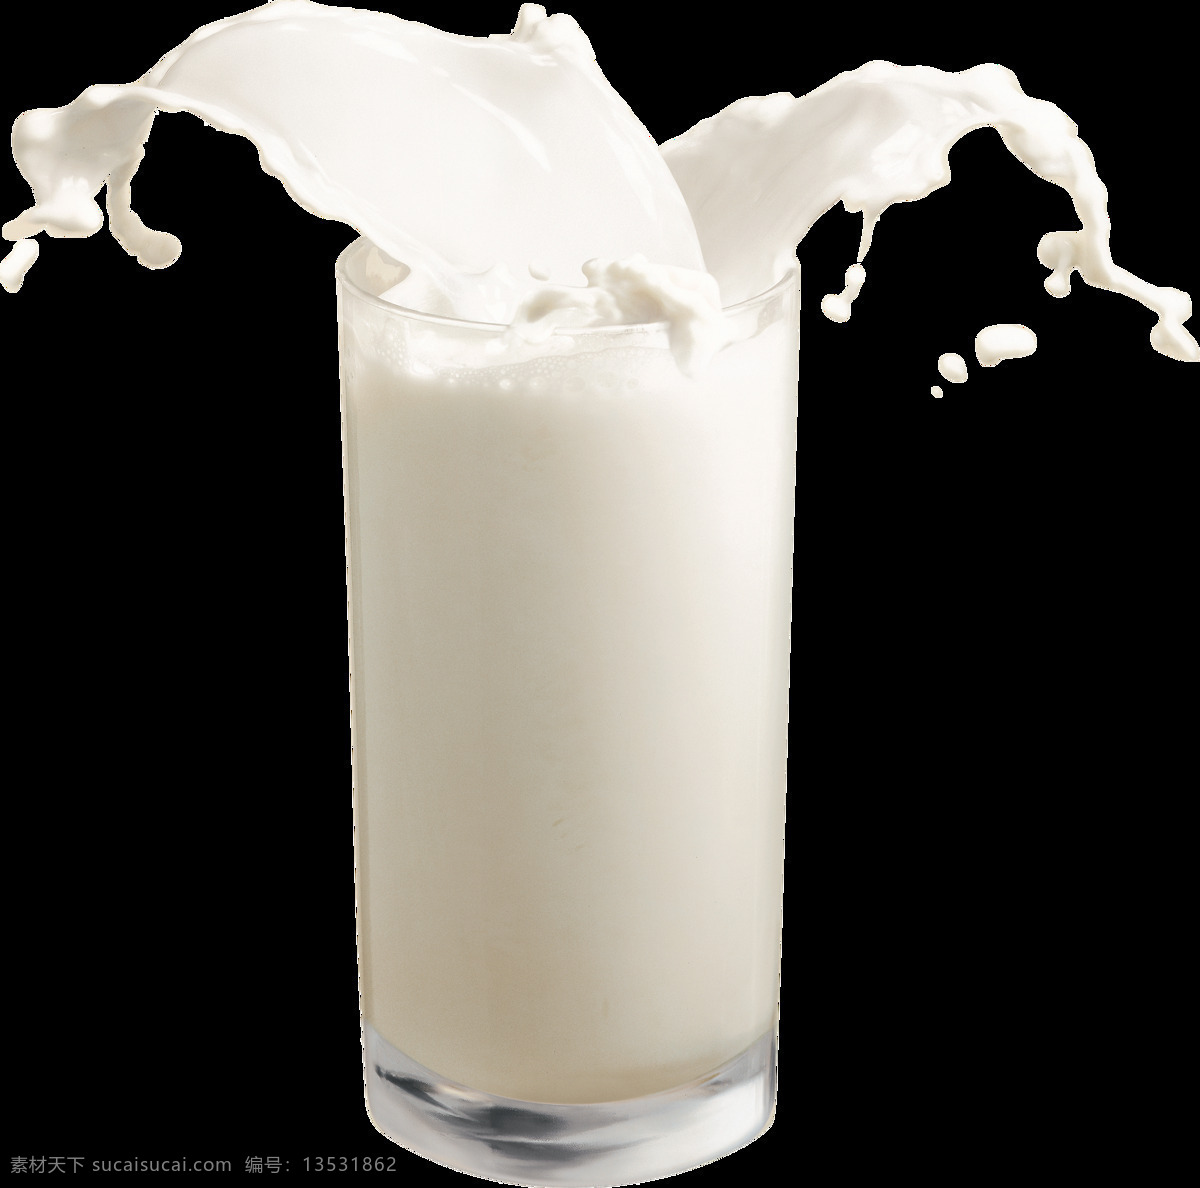 杯子 喷溅的牛奶 创意 广告 背景素材 海报素材